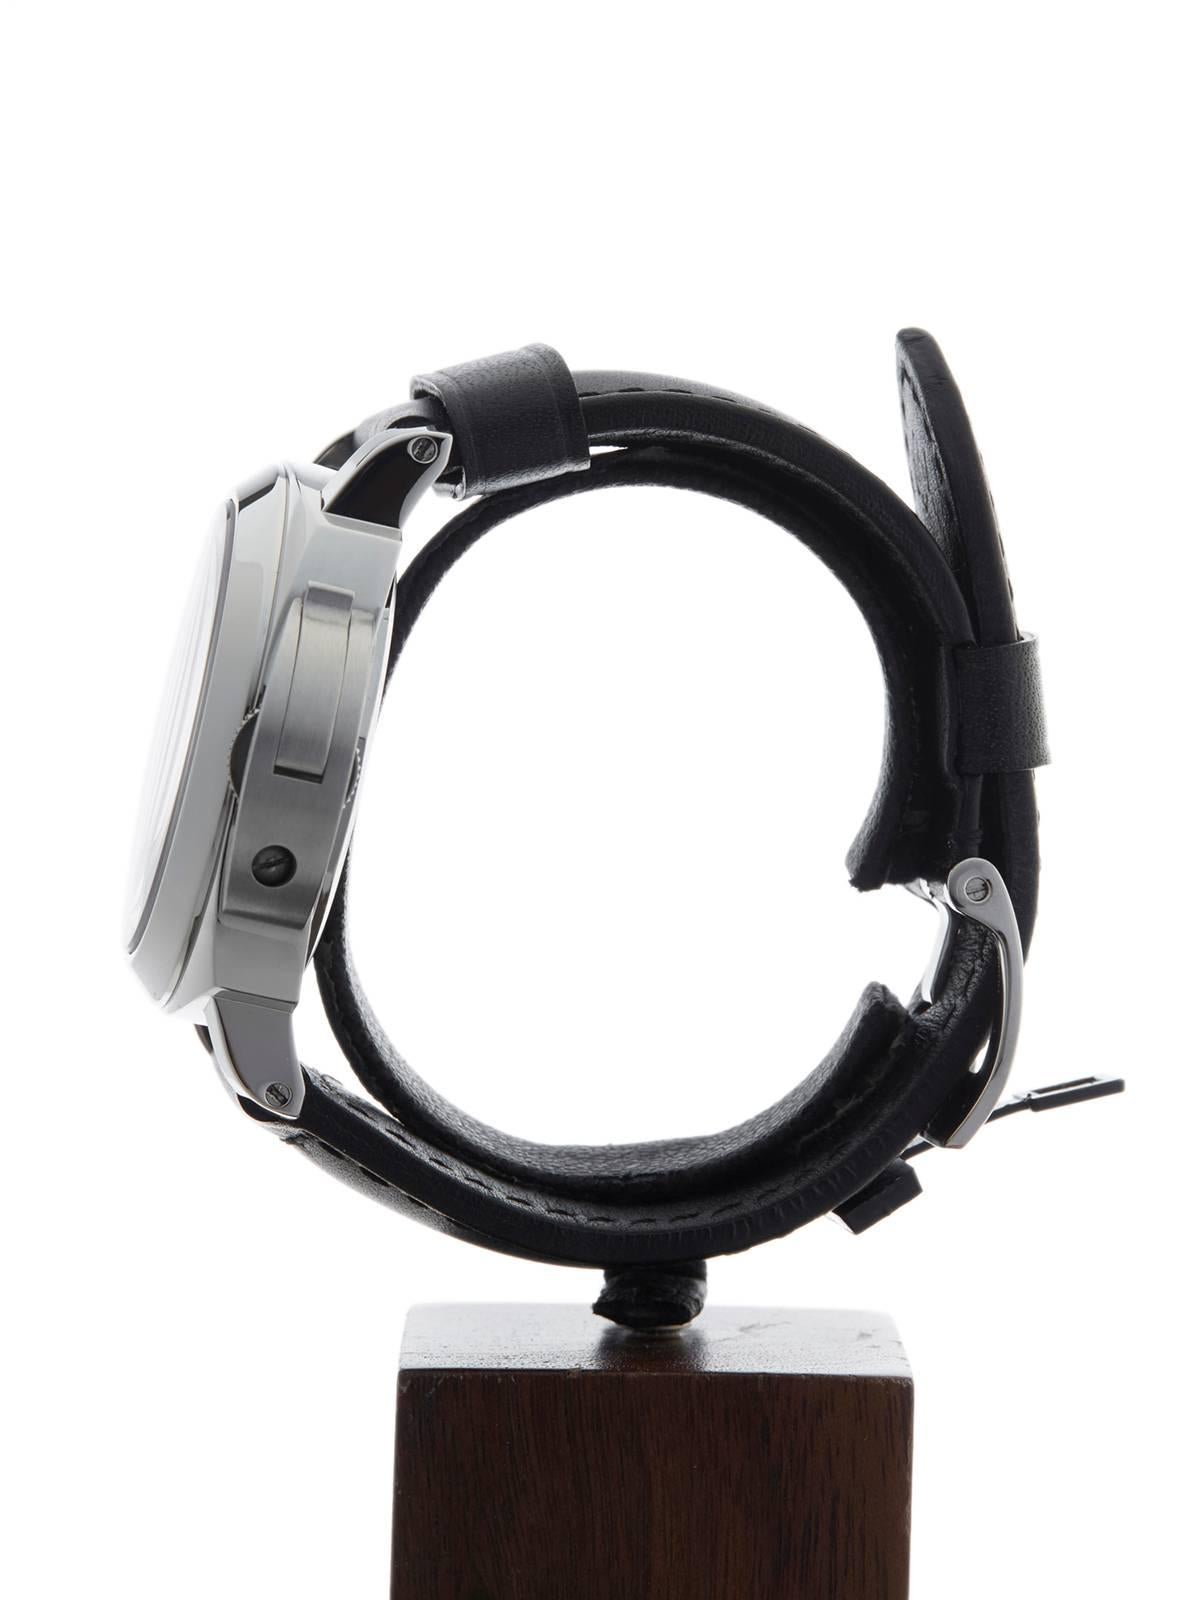  Panerai Stainless Steel Luminor Base Automatic Wristwatch PAM0000 2014 1